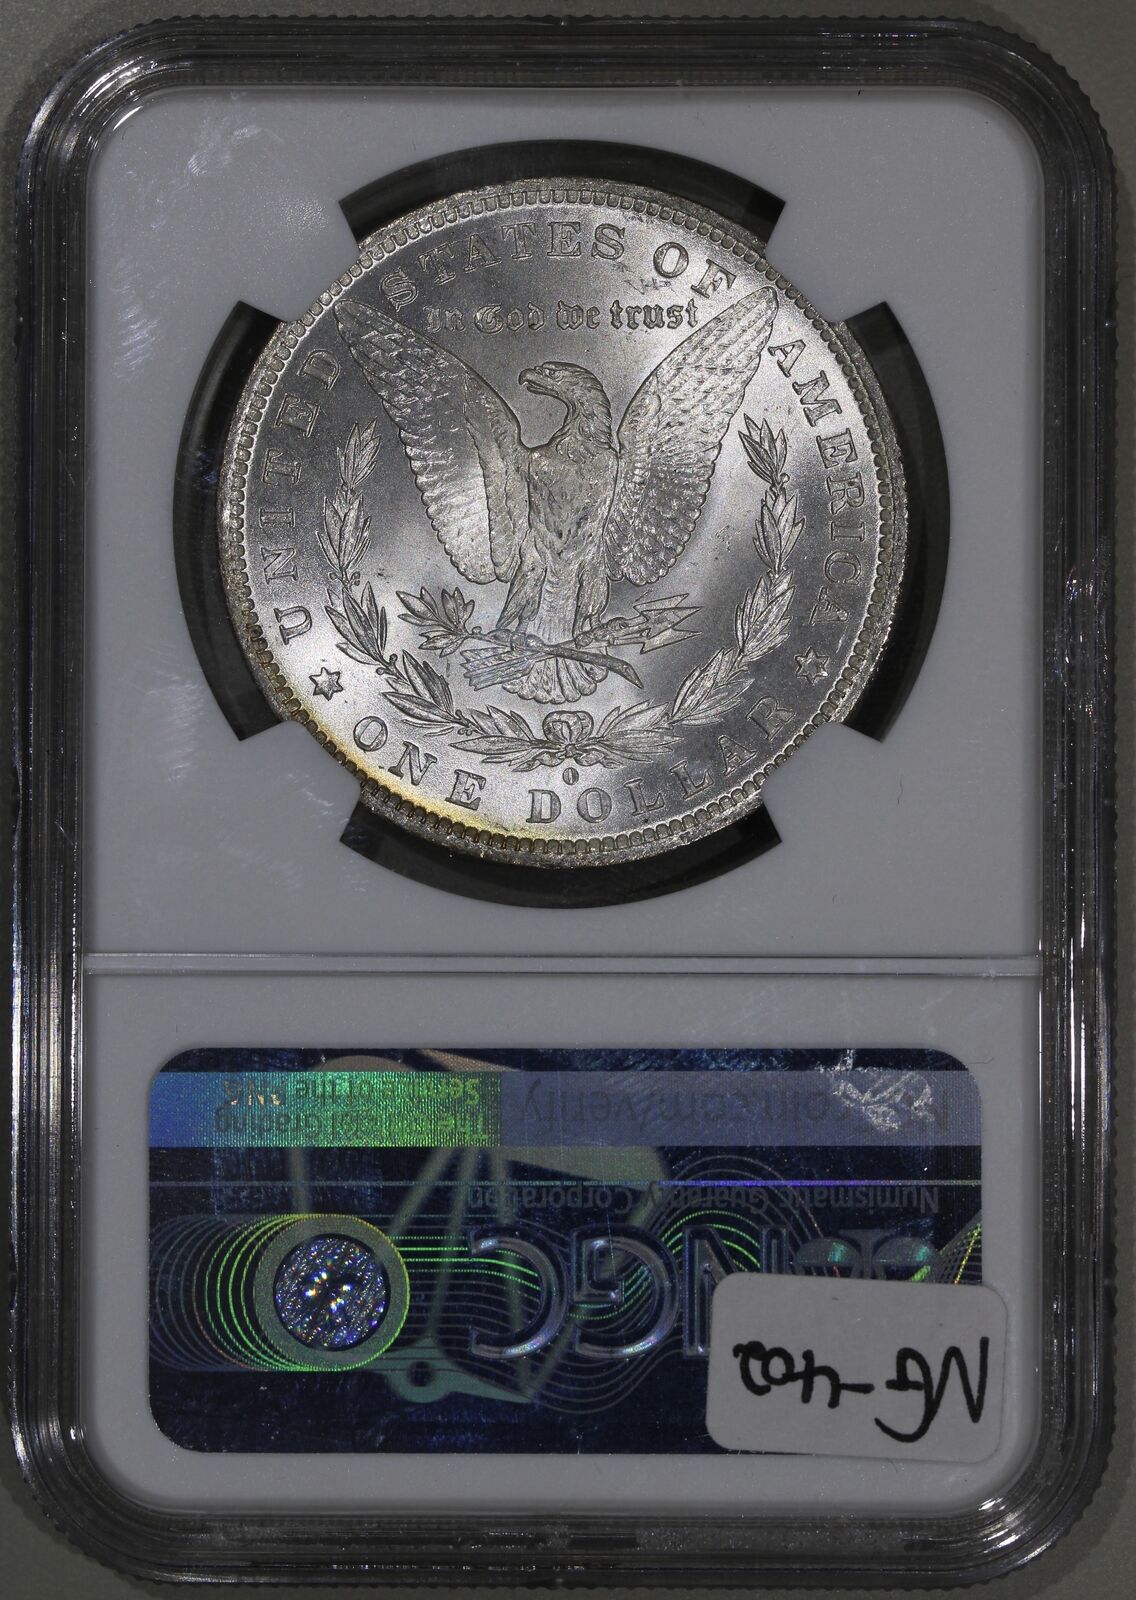 1884-O O/O (MS63) VAM-10 Hot 50 Morgan Silver Dollar $1 NGC Graded Coin